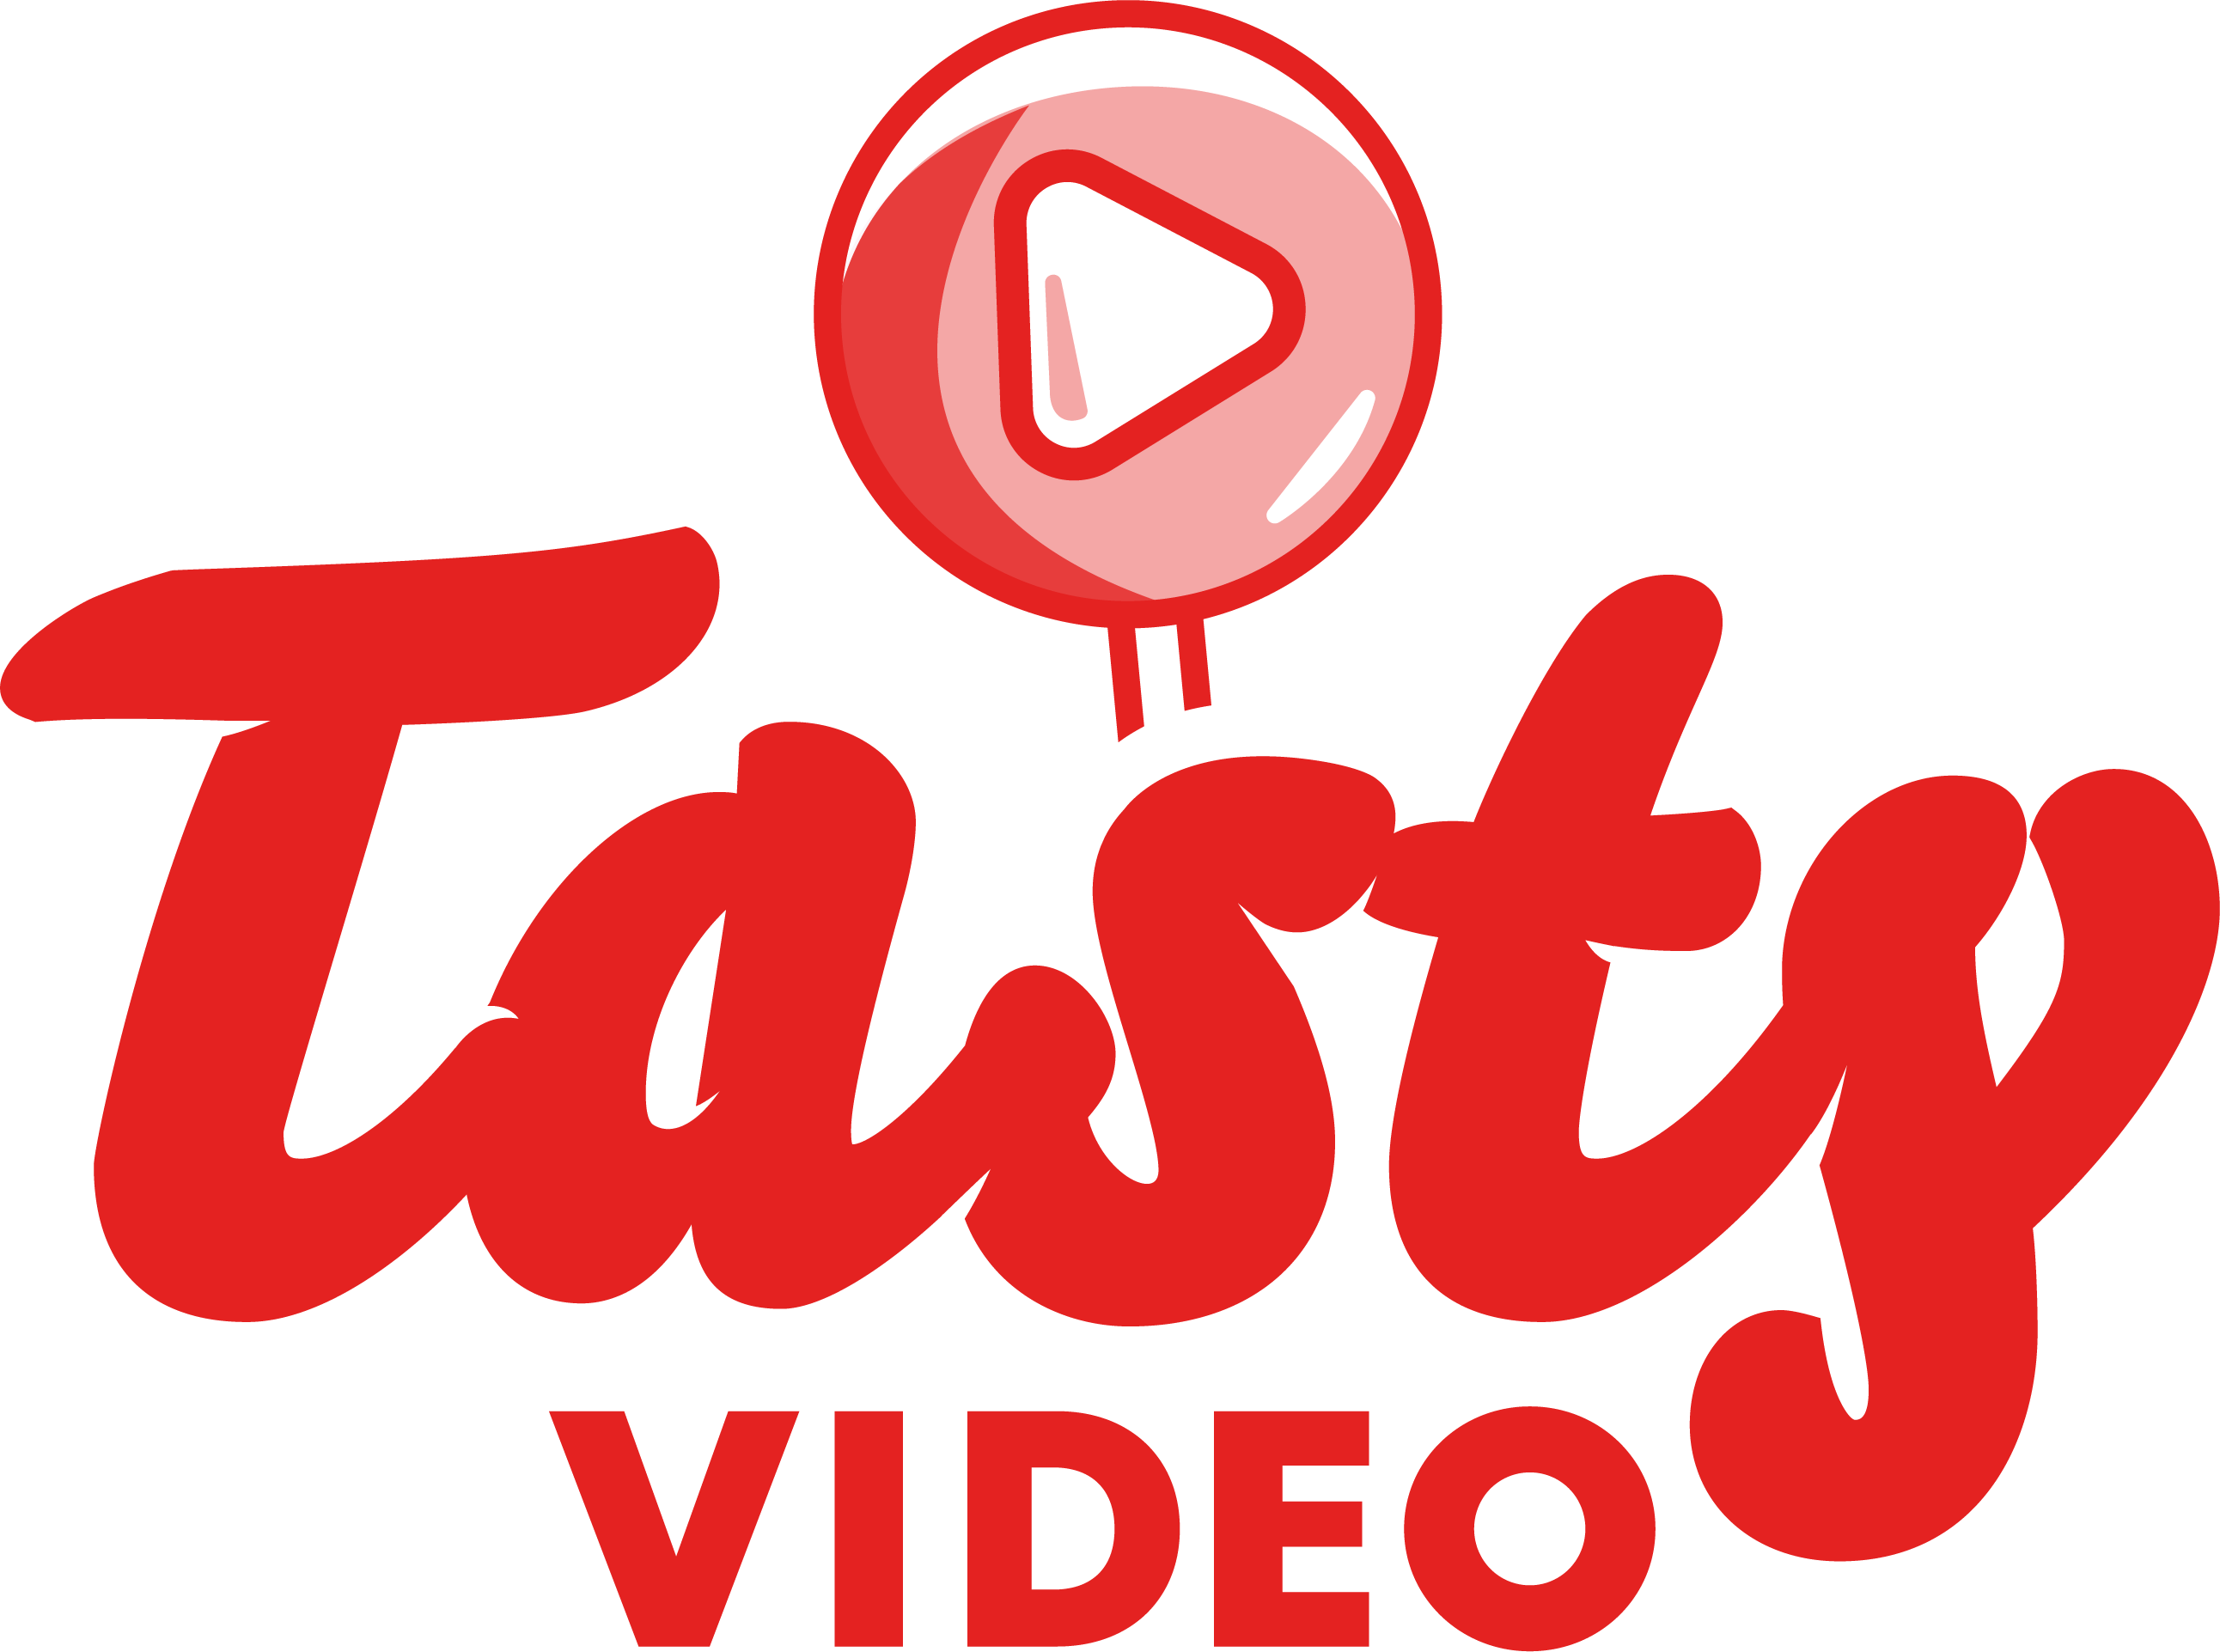 Fondateur & réalisateur de Tasty Video